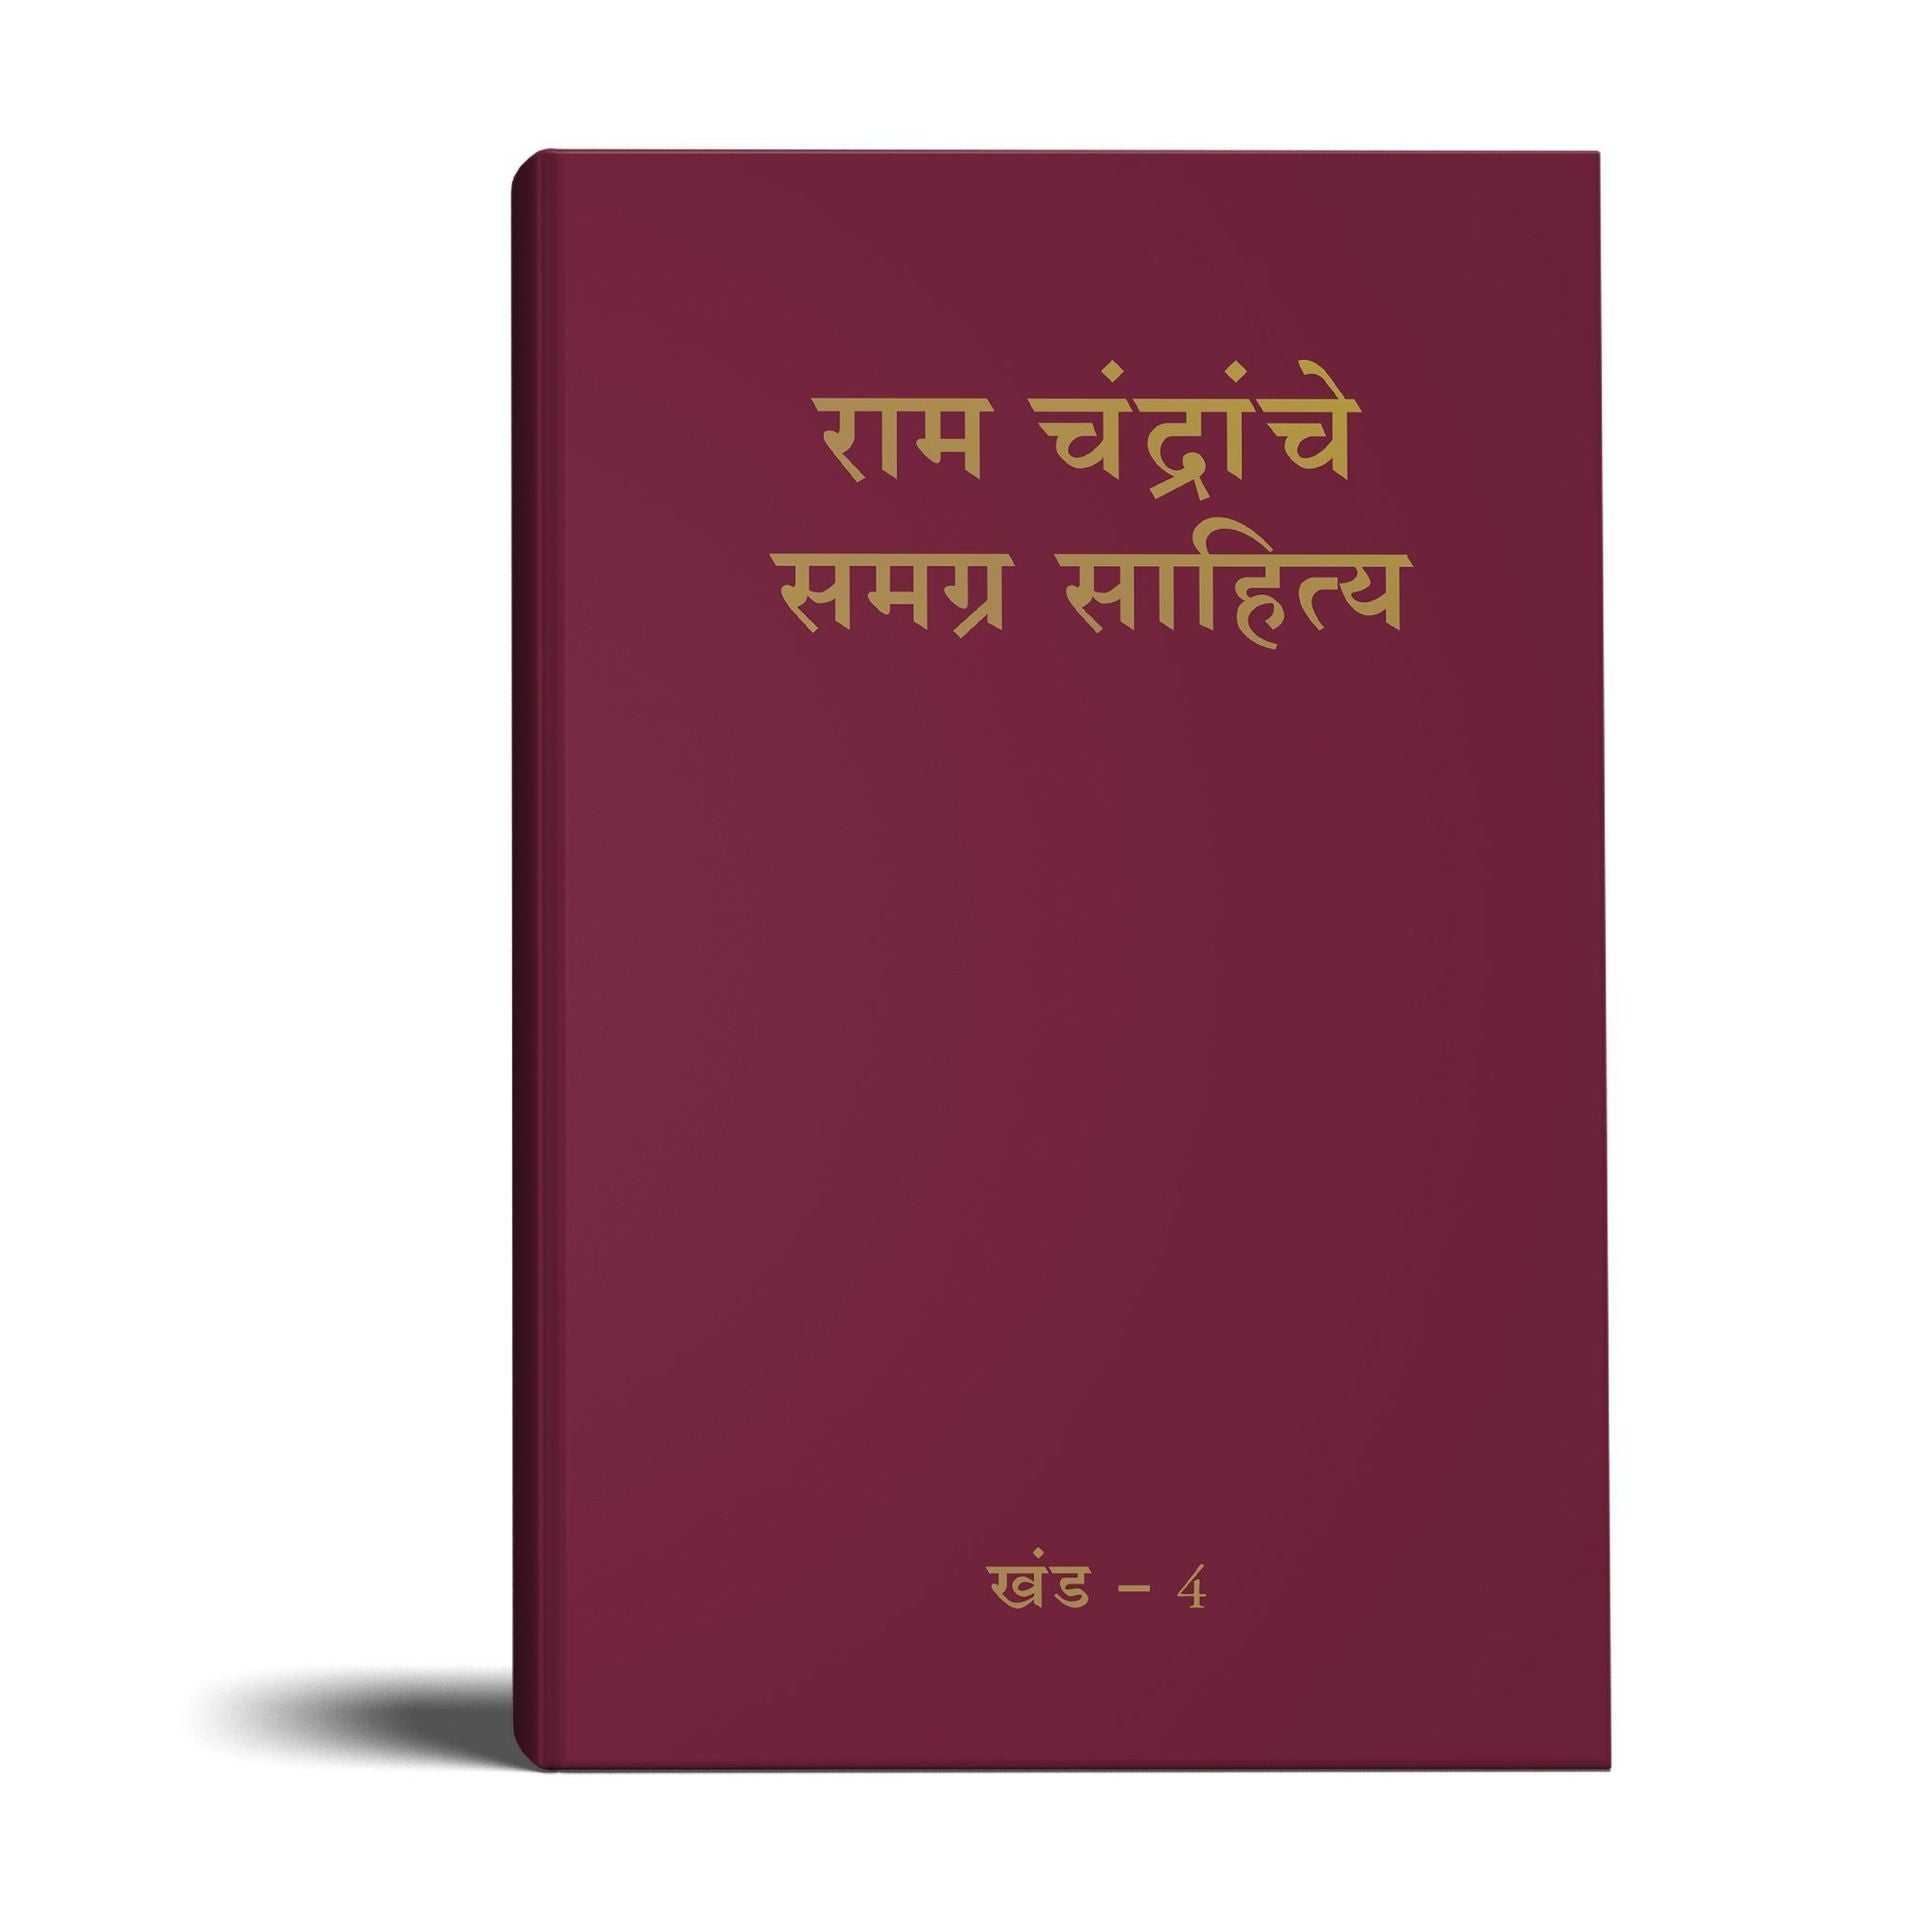 Complete Works of Ramchandra(Babuji) Volume 4 (Marathi)